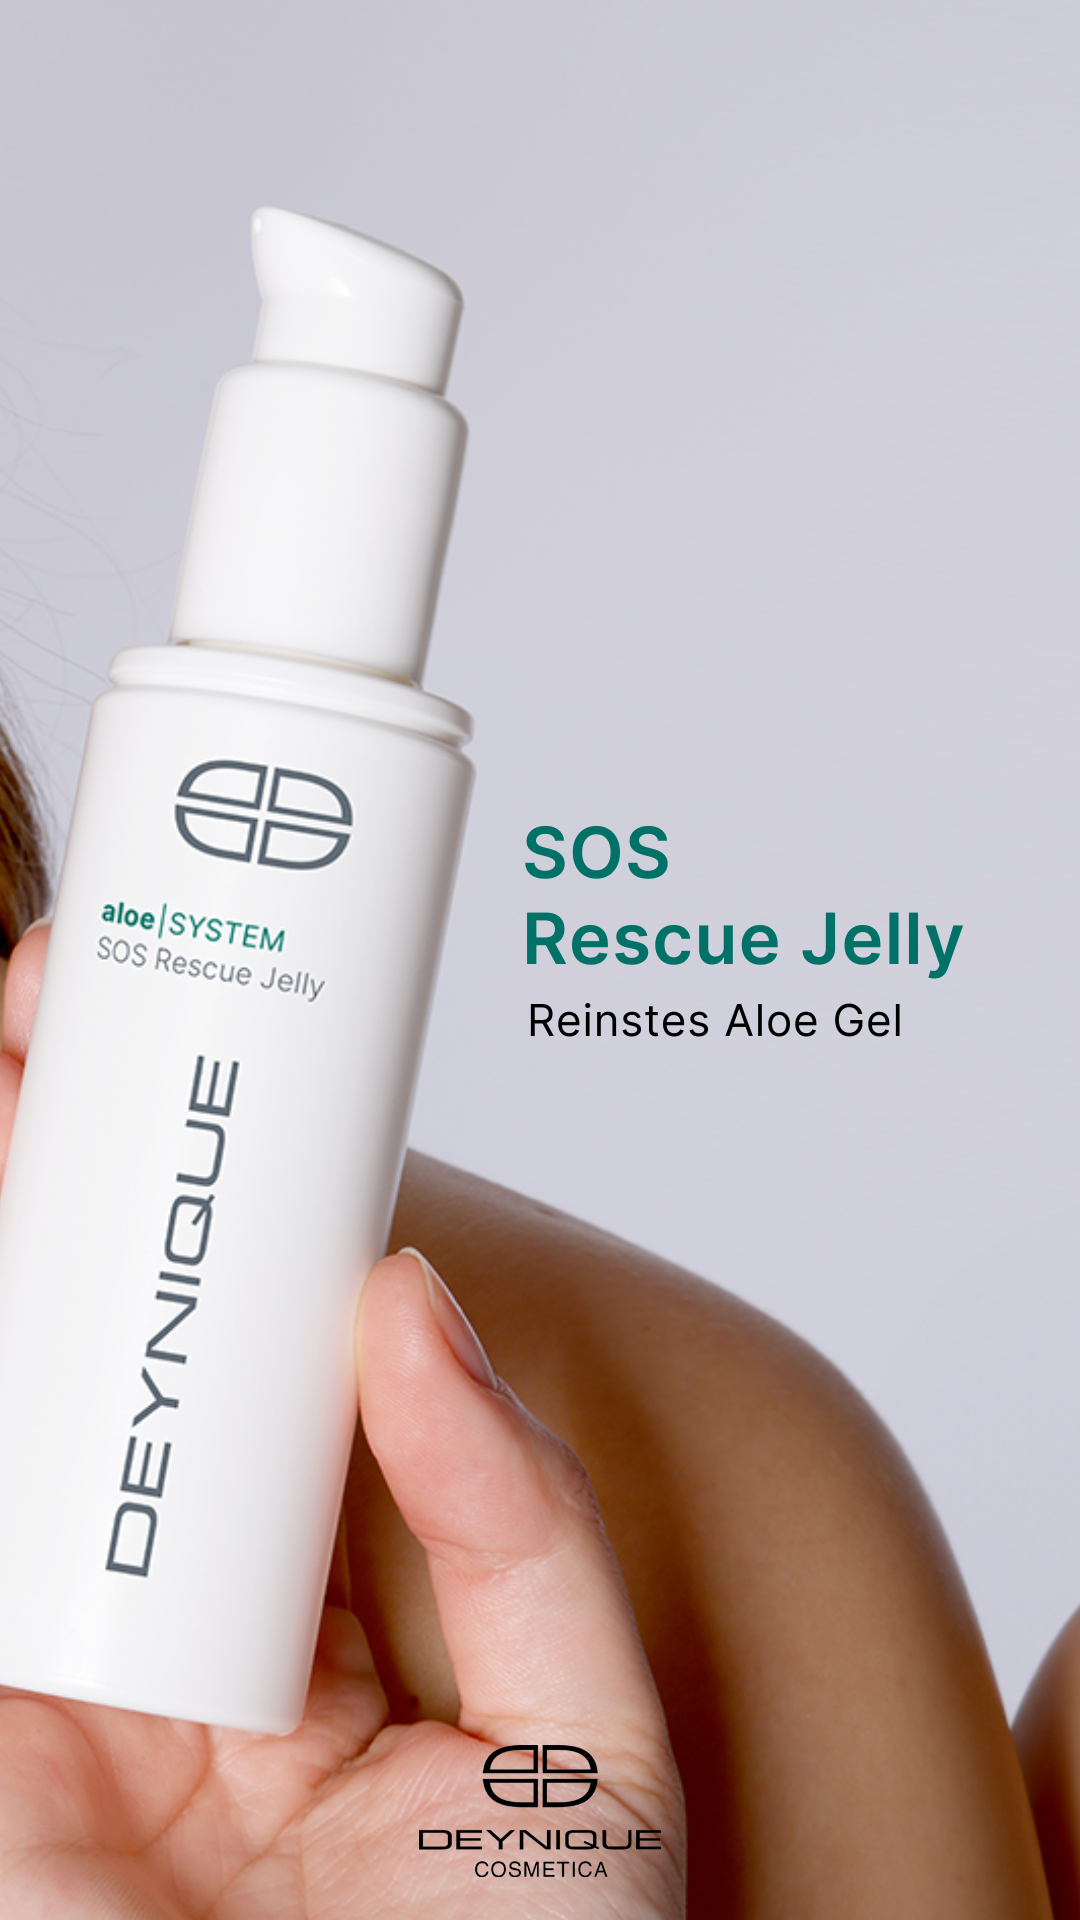 Status_SOS Rescue JellyS